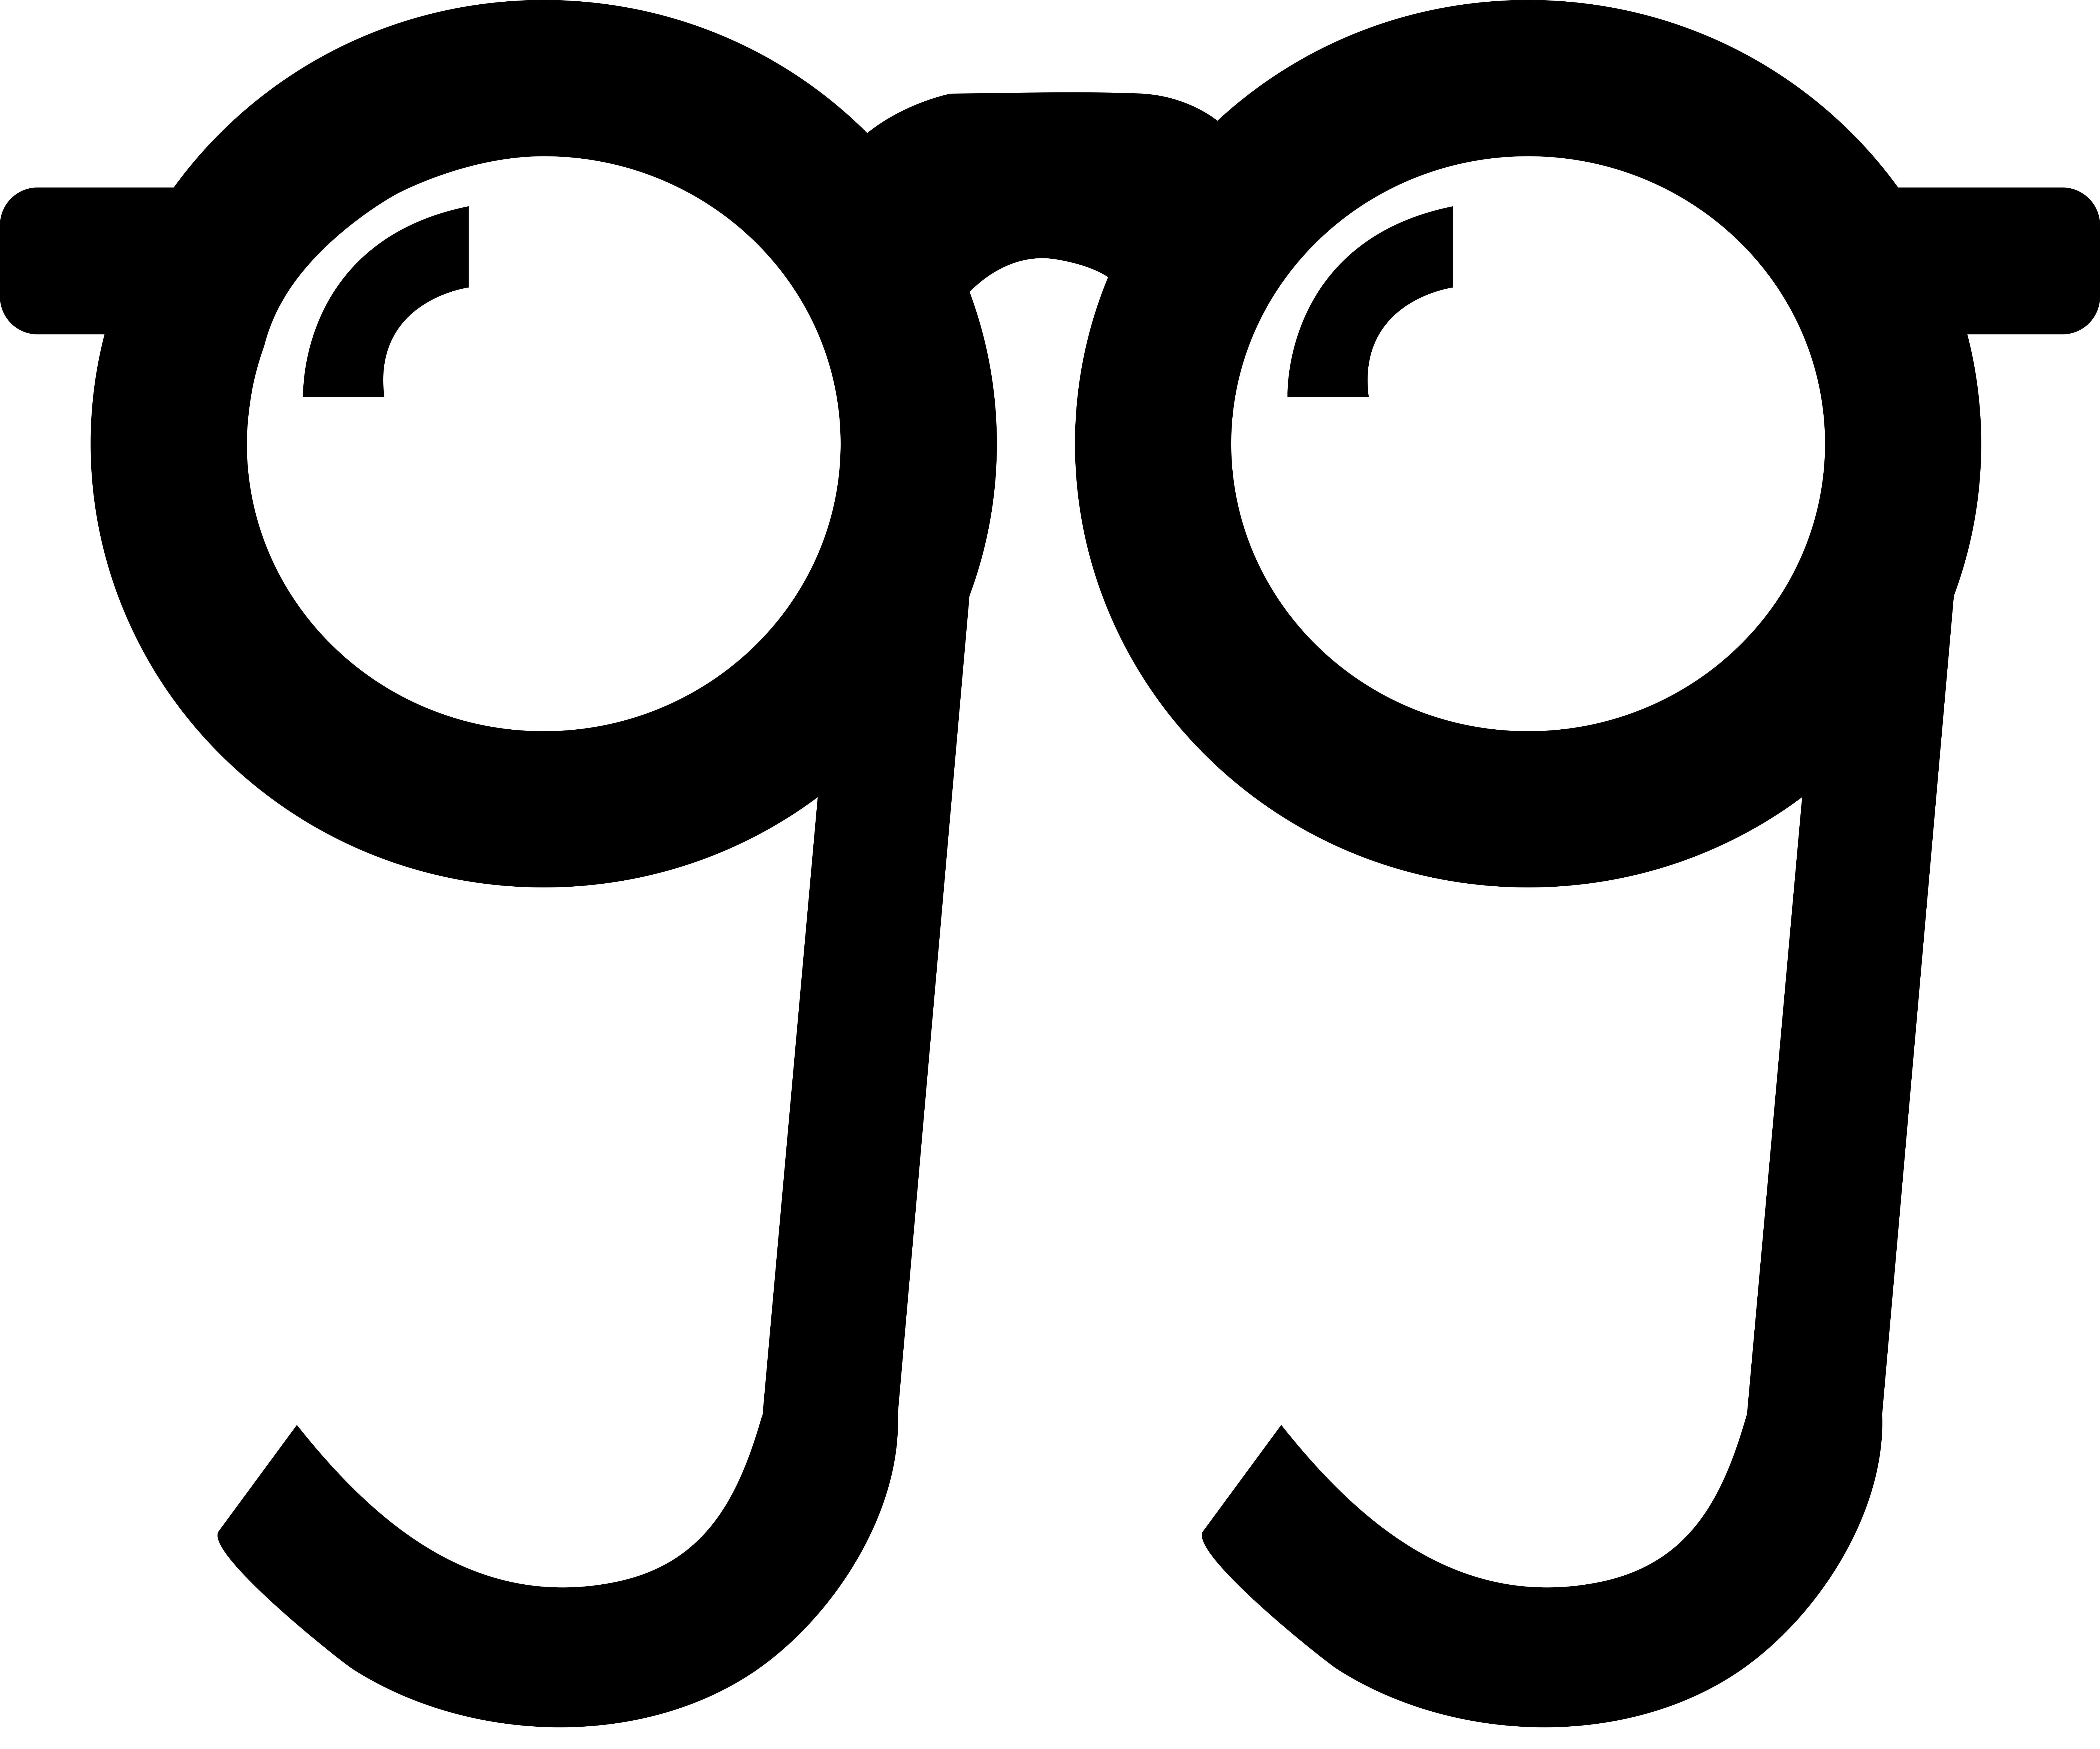 Trademark Logo GG